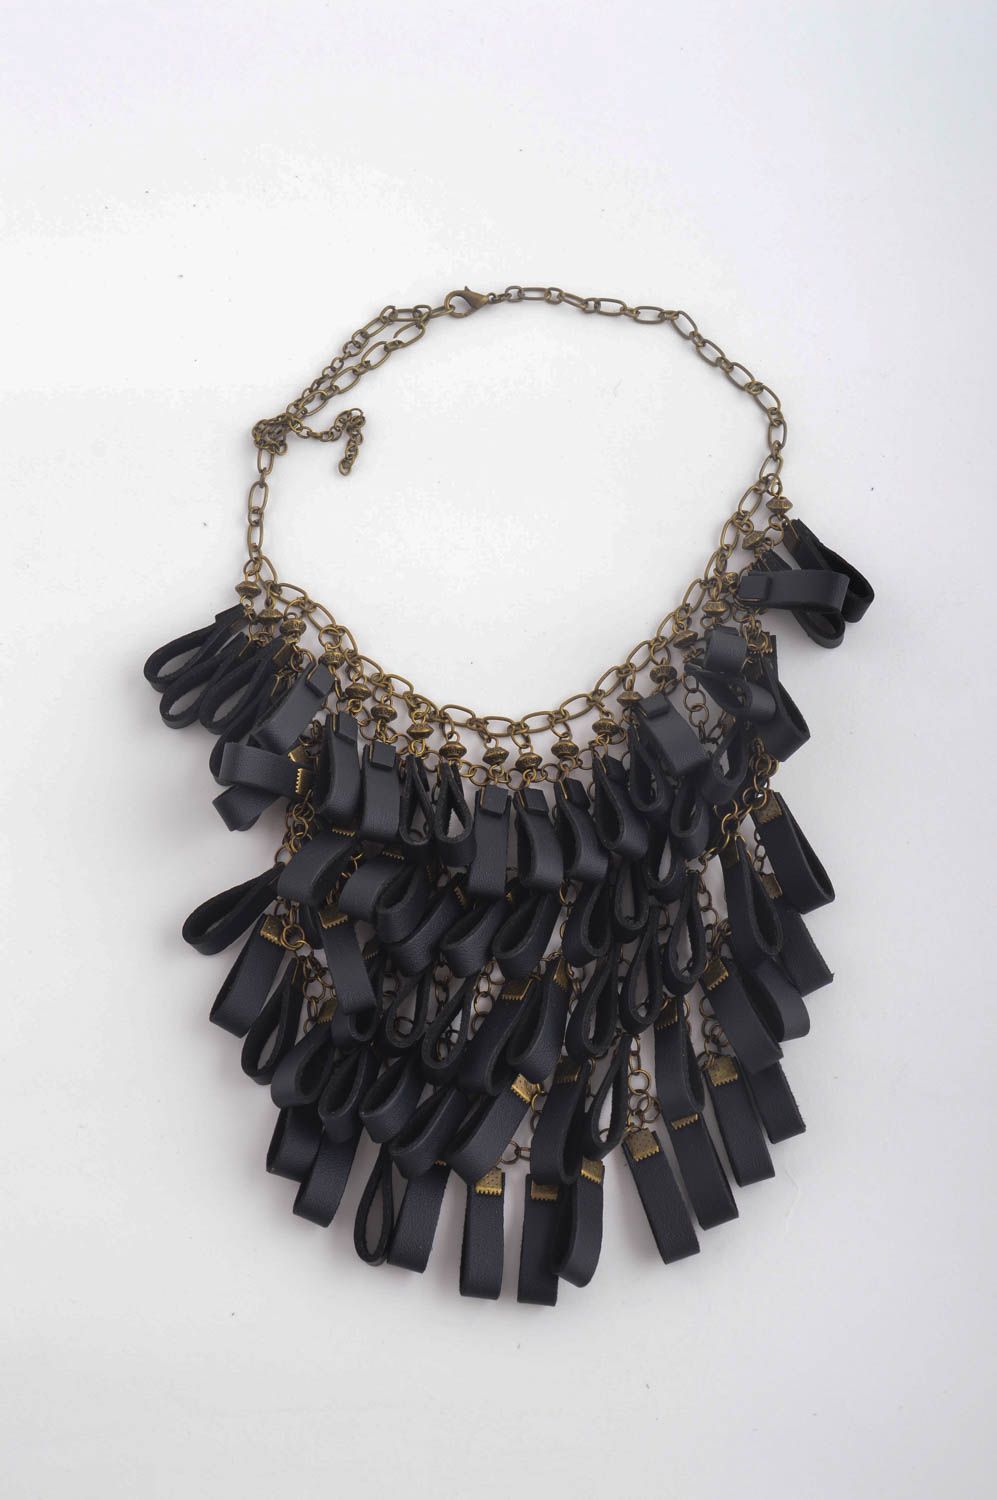 Подарок ручной работы кожаное колье черного цвета массивное ожерелье Бахрома фото 2